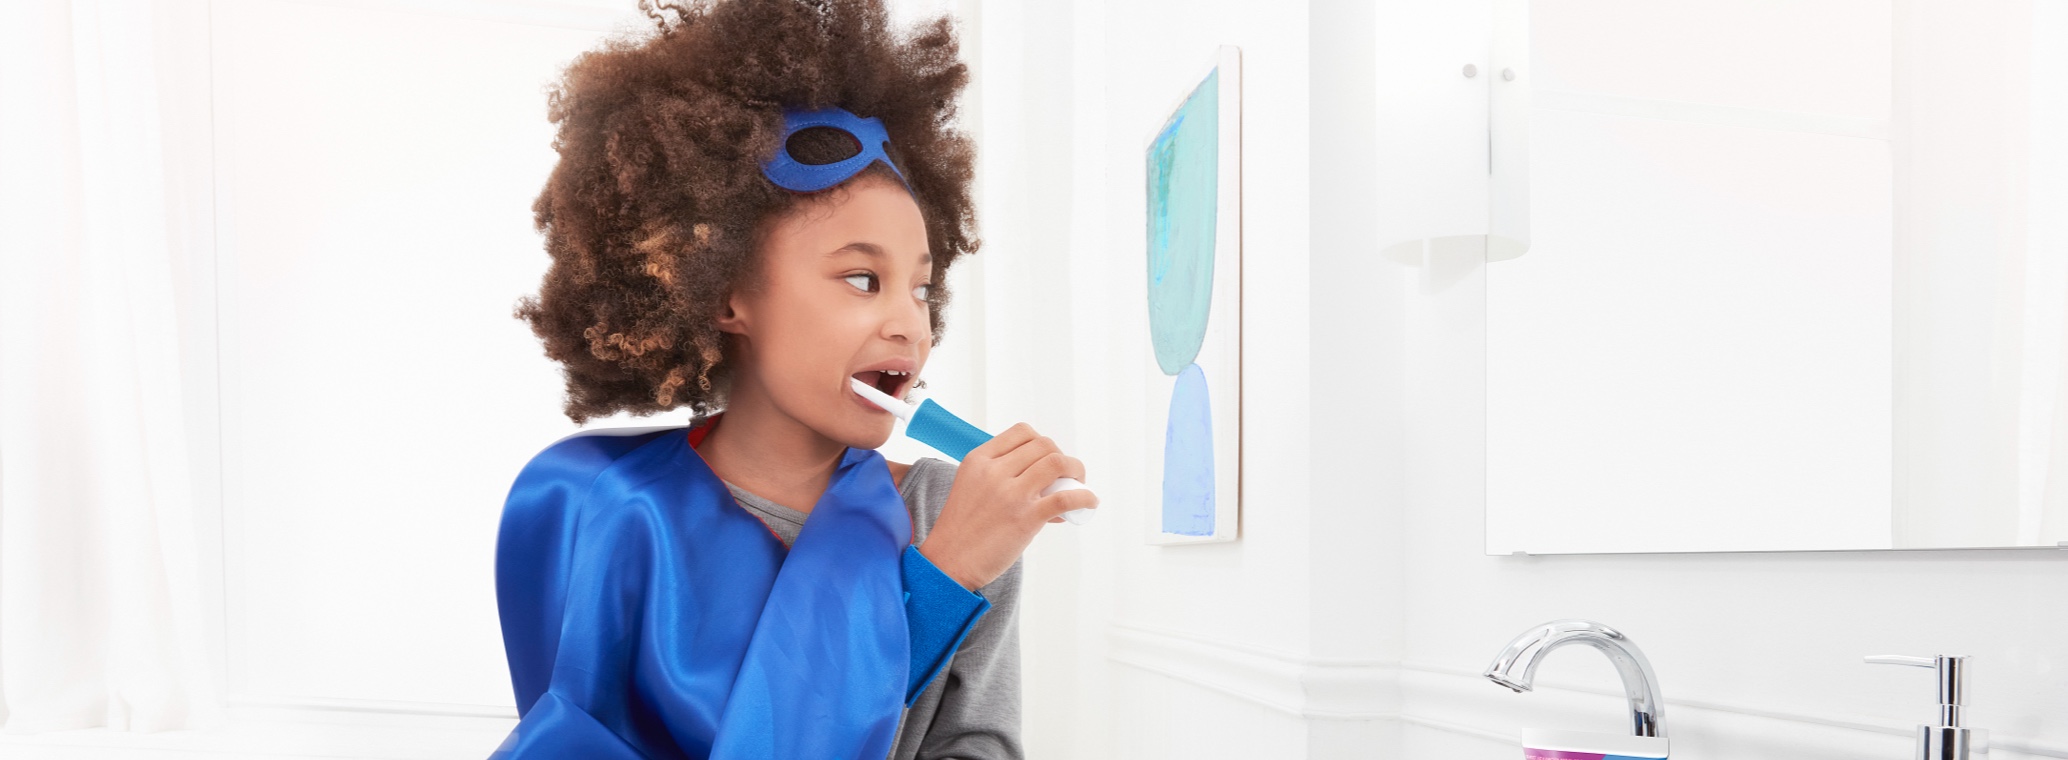 Brushing Teeth for Kids